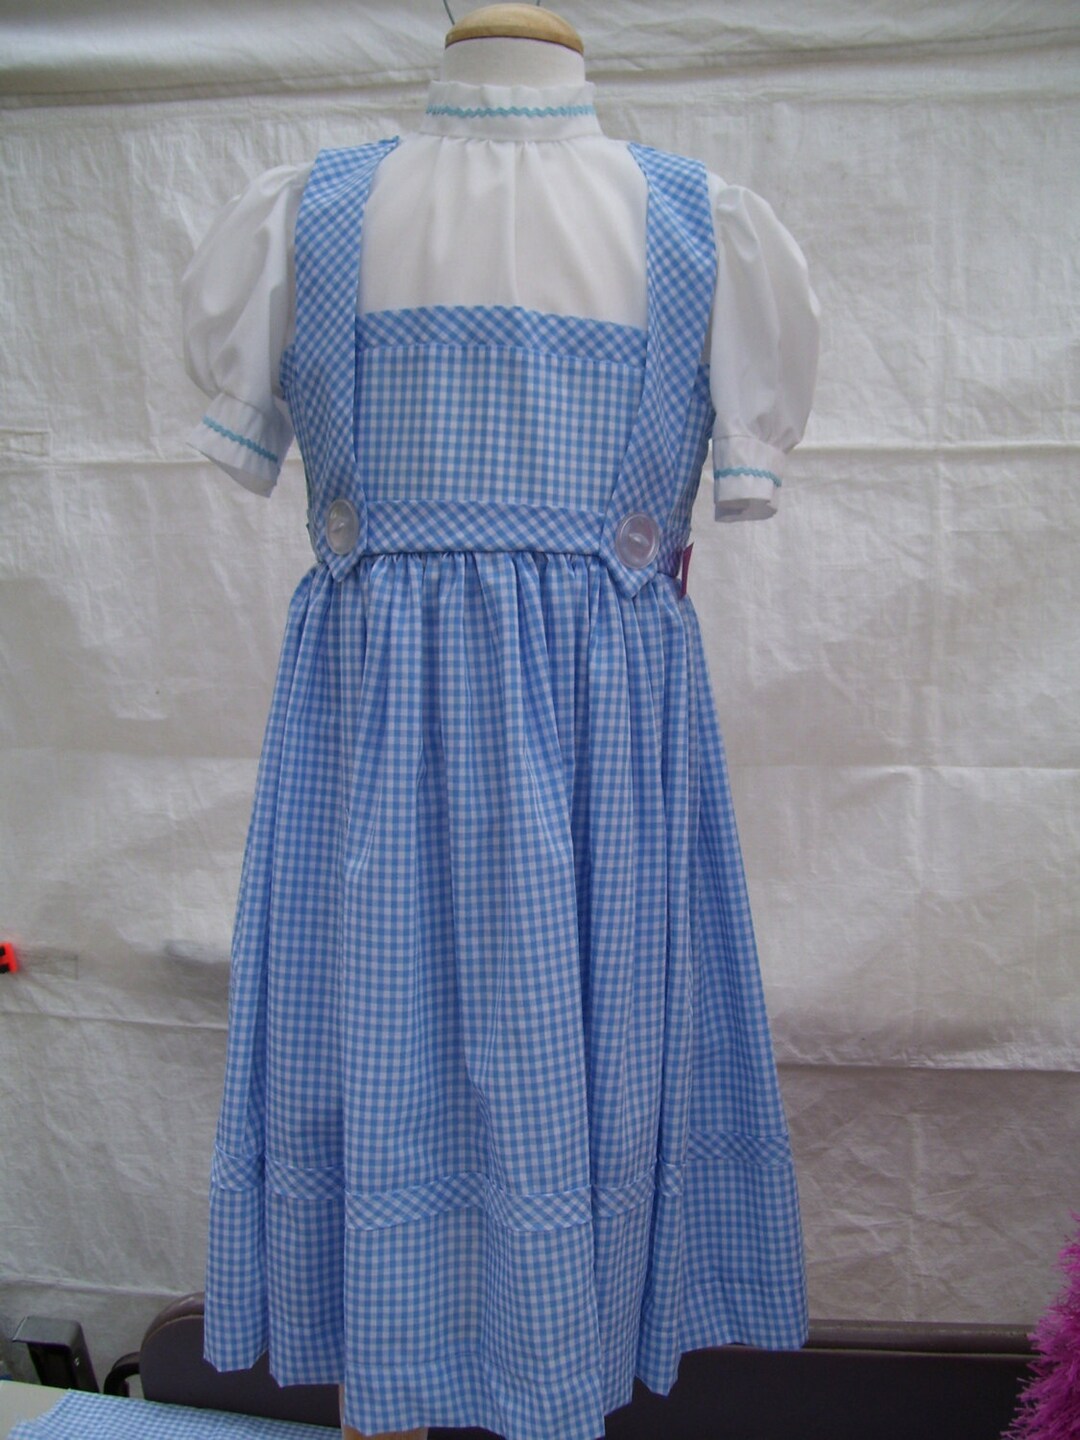 Dorothy Dress Size Girl 8 - Etsy